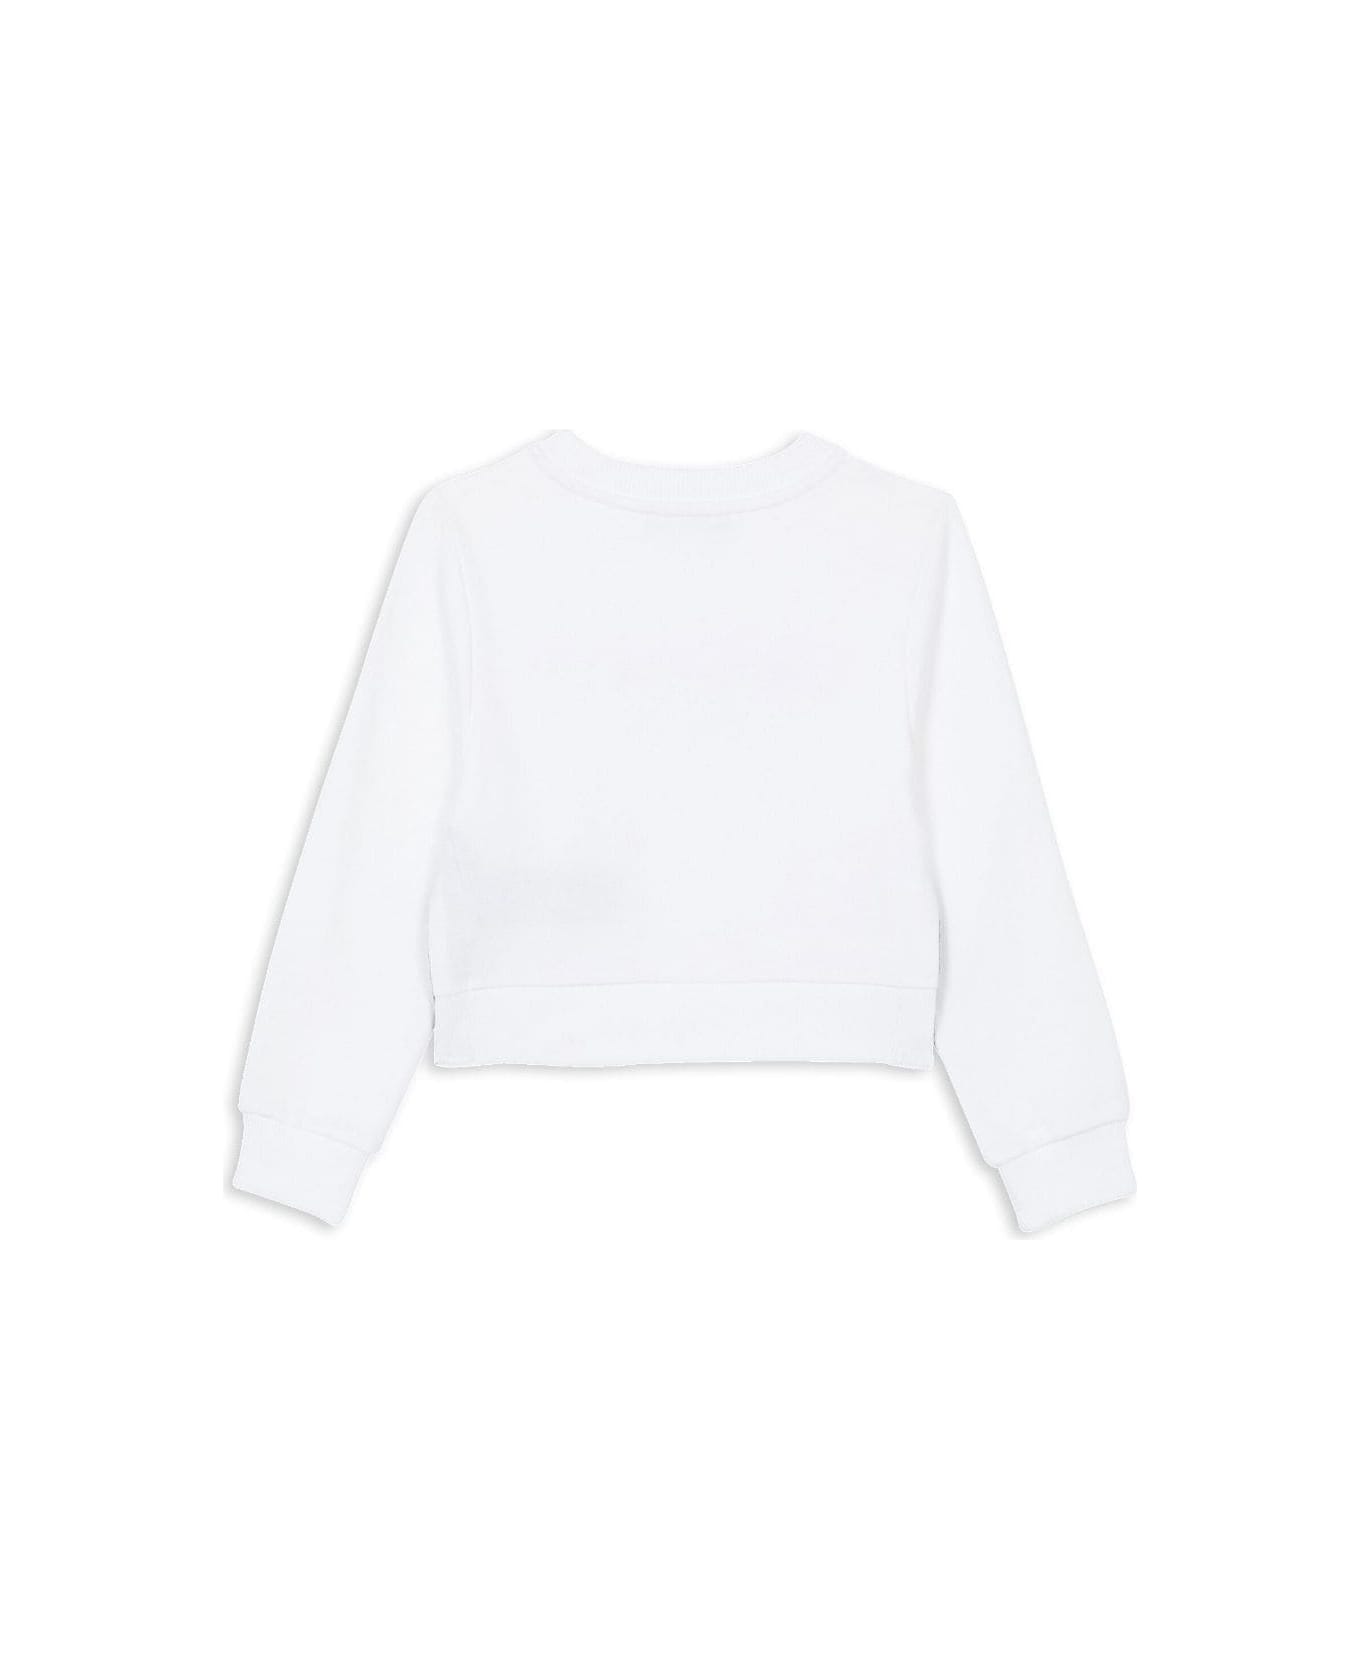 Balmain Sweatshirt With Print - White